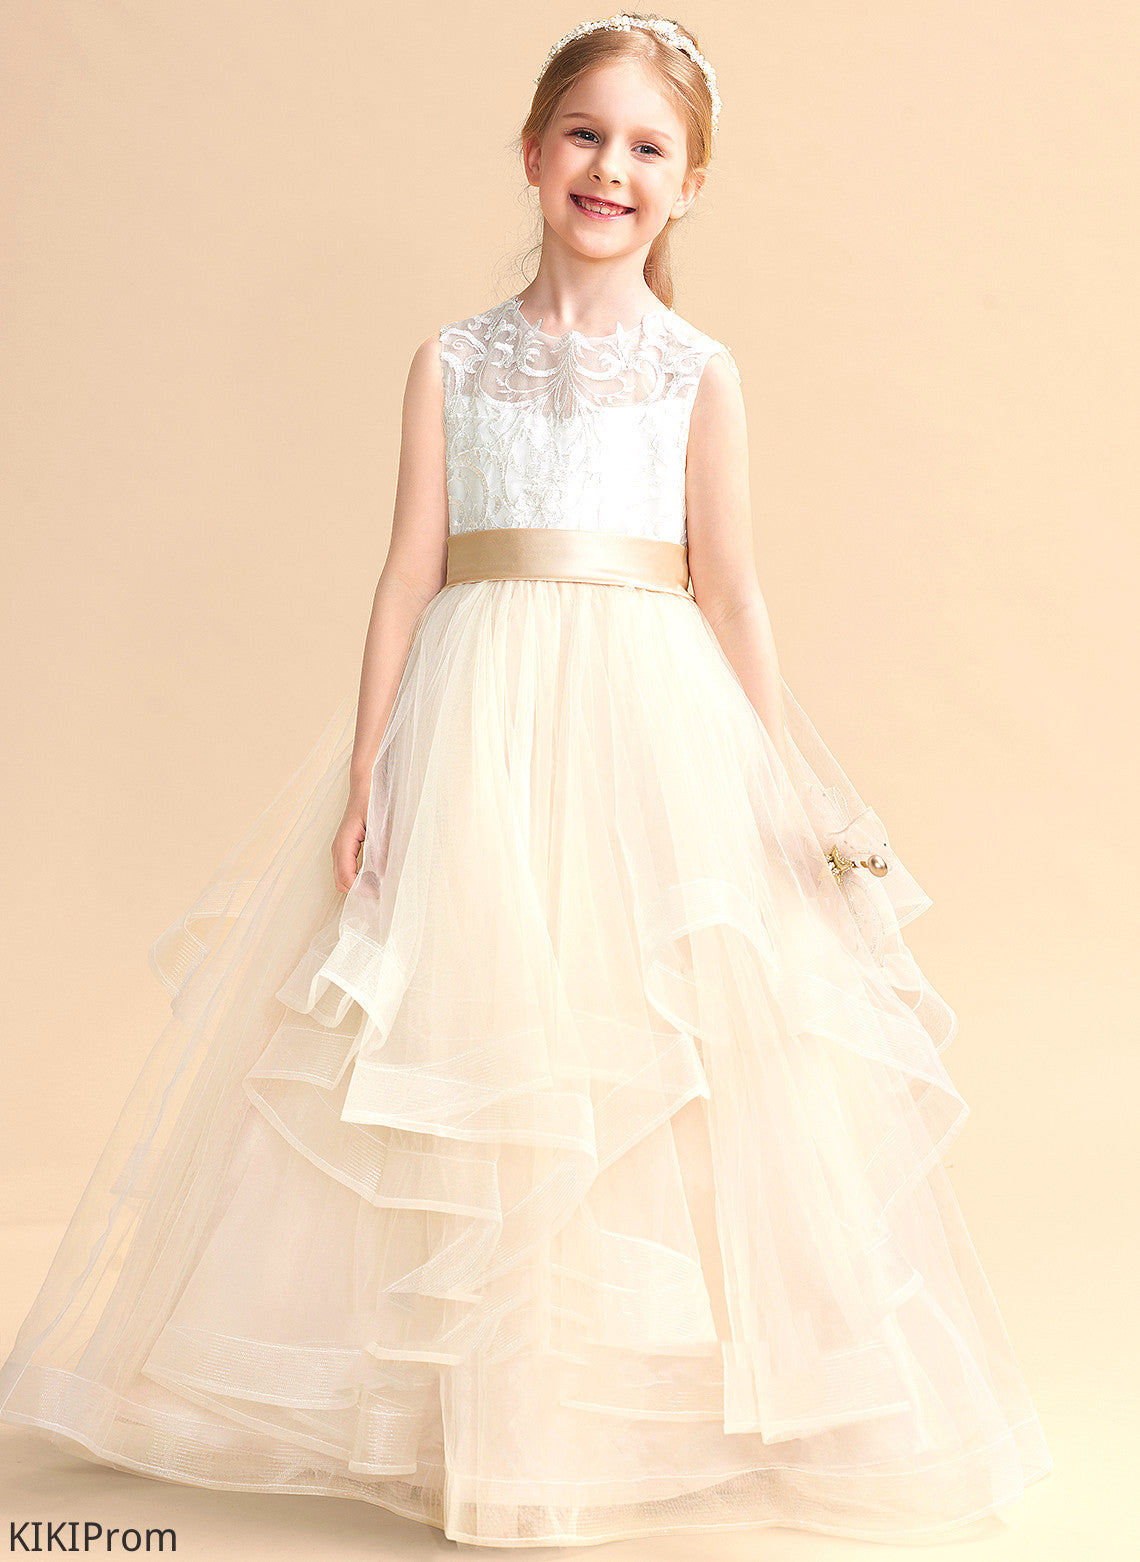 Donna - Dress Girl Neck Sleeveless Floor-length Flower Tulle/Lace Ball-Gown/Princess Flower Girl Dresses Scoop